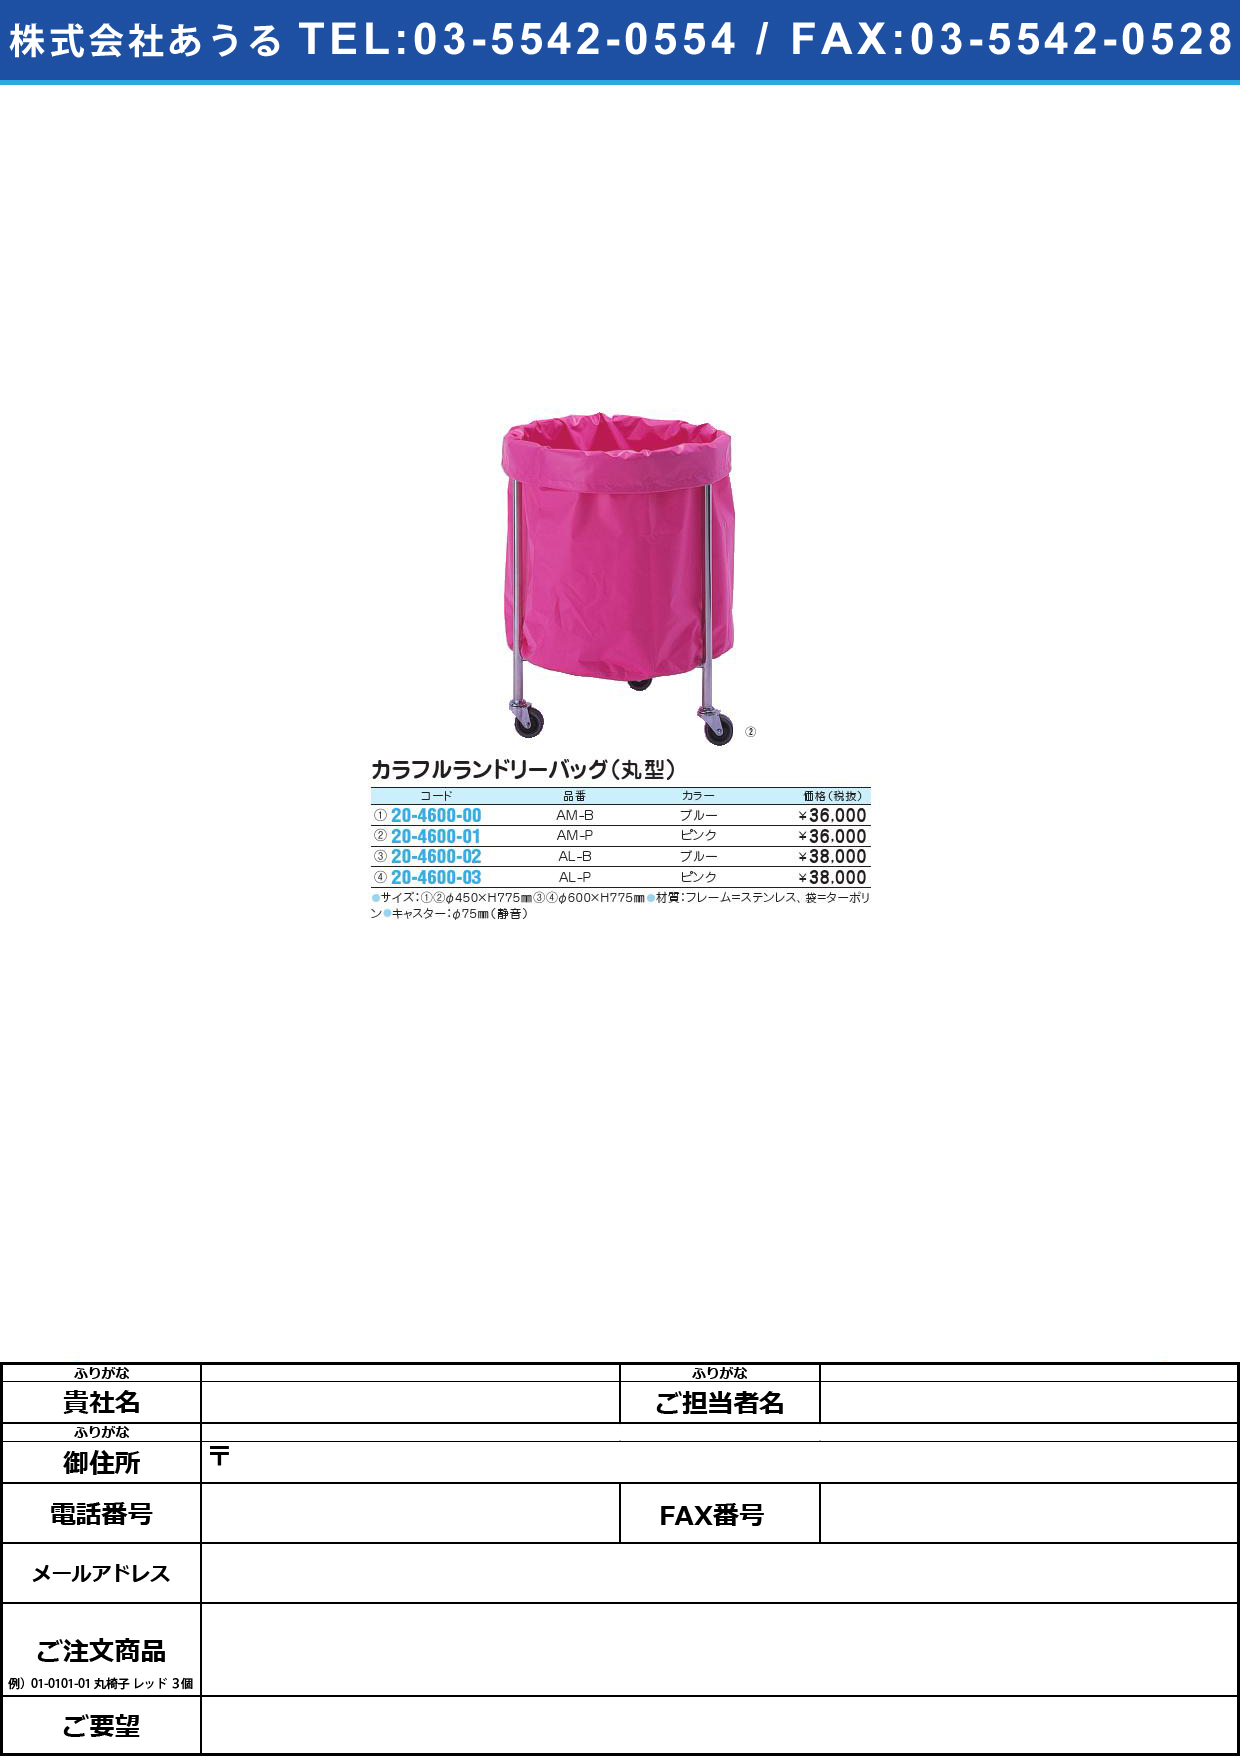 カラフルランドリーバッグ（丸型） SK-248･AL-P(ﾋﾟﾝｸ)ｶﾗﾌﾙﾗﾝﾄﾞﾘｰﾊﾞｯｸﾞﾏﾙｶﾞﾀ(20-4600-03)【1台単位】